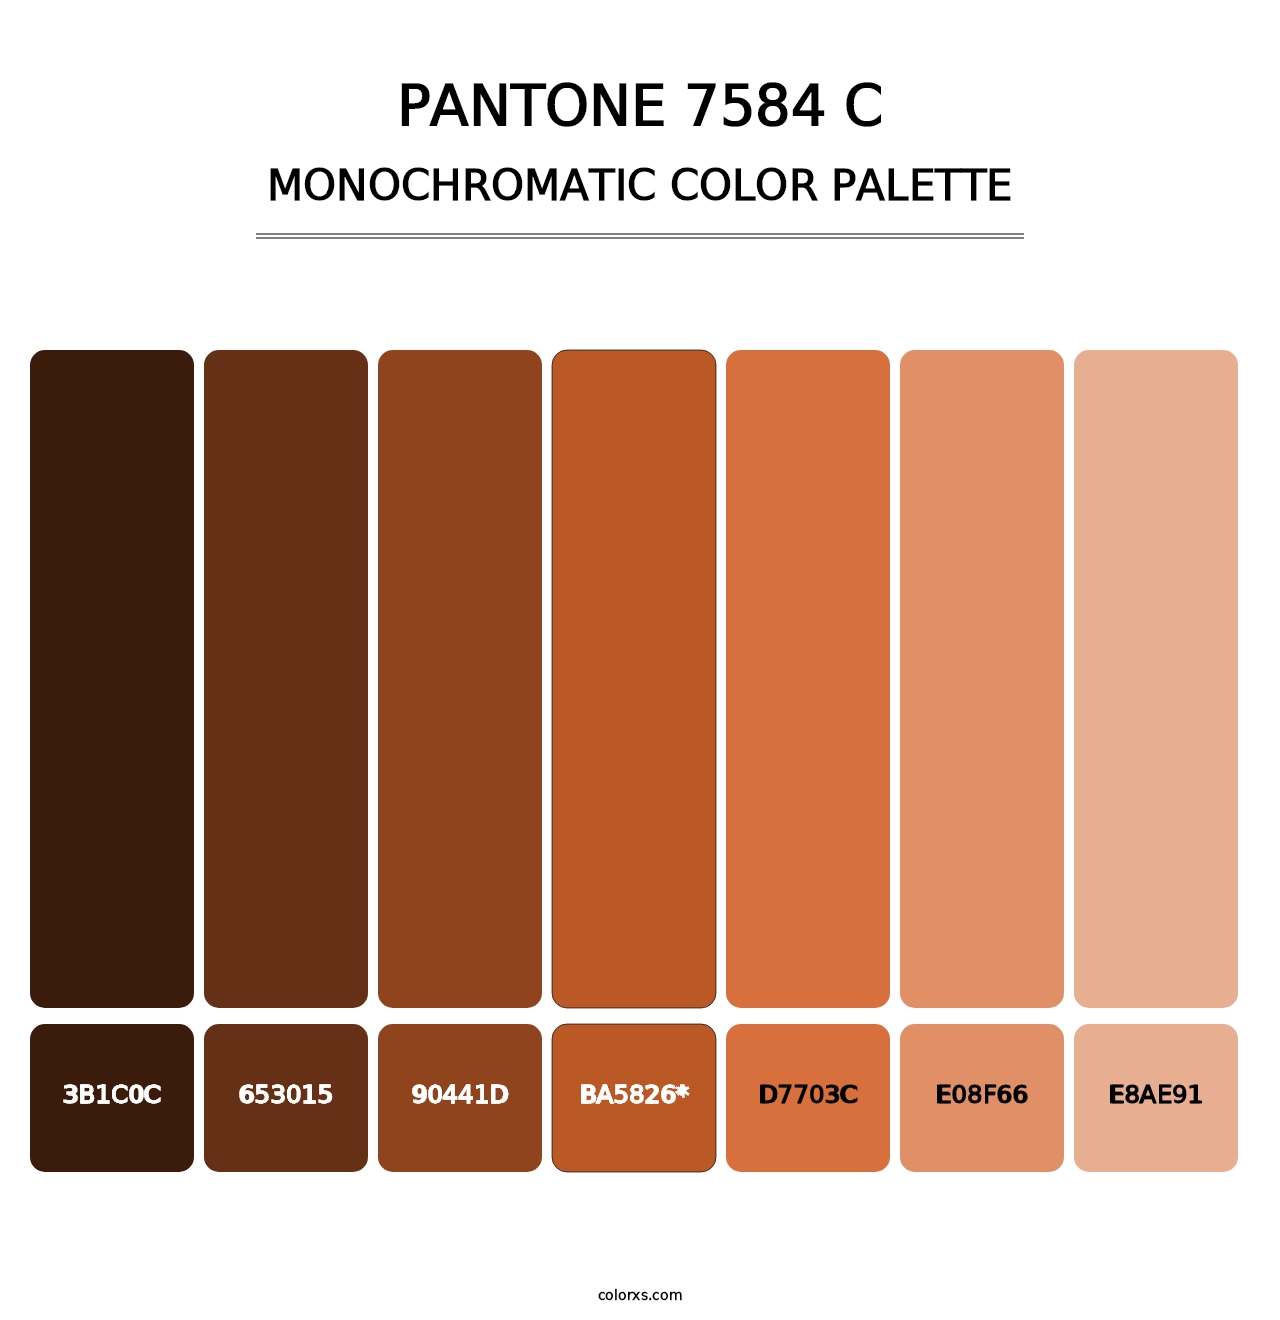 PANTONE 7584 C - Monochromatic Color Palette